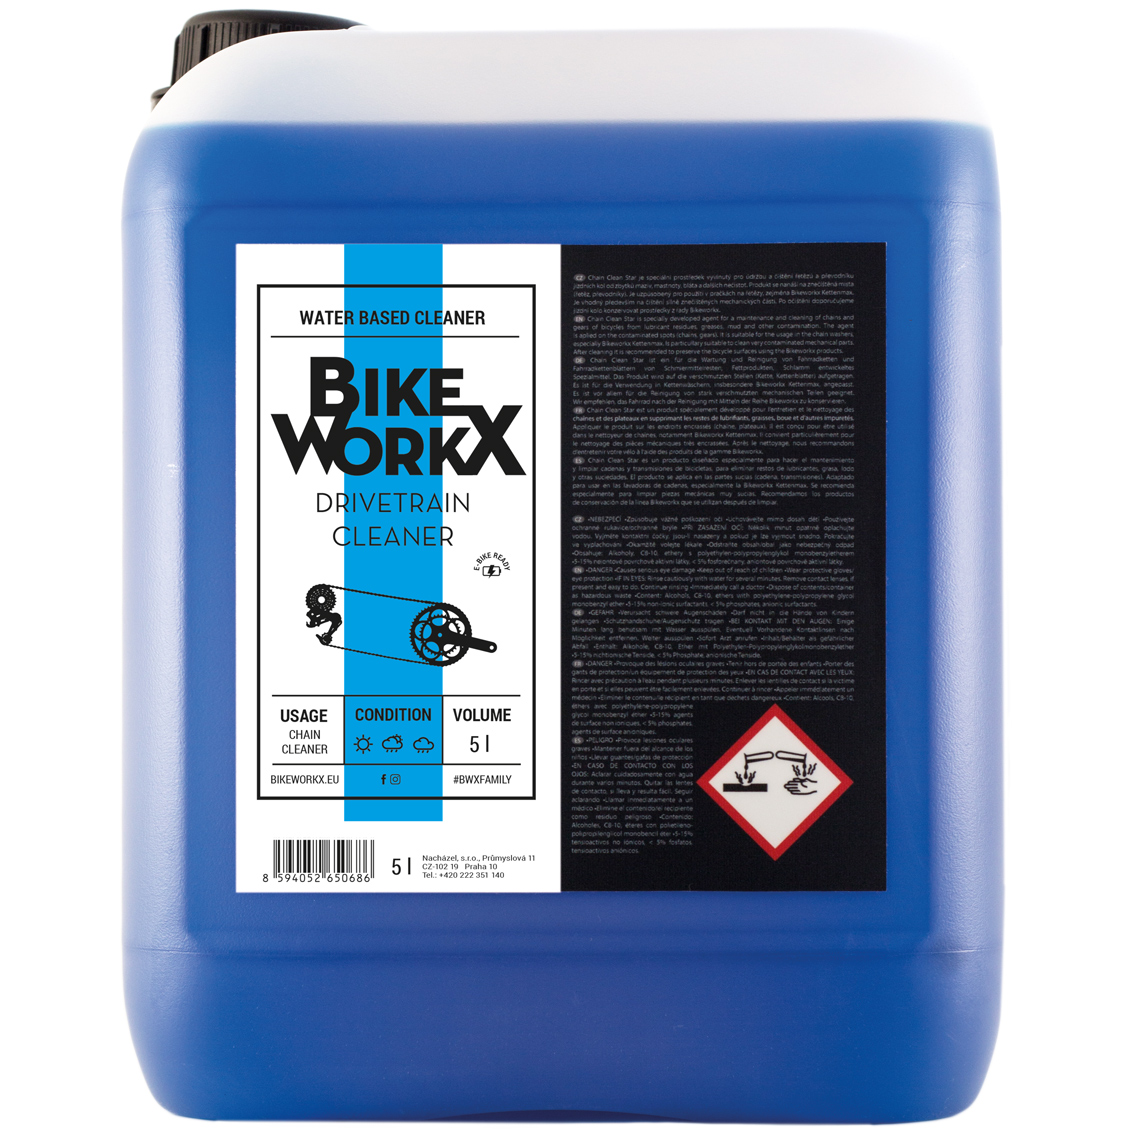 Produktbild von BikeWorkx Drivetrain Cleaner - Antriebreiniger - Kanister 5000ml